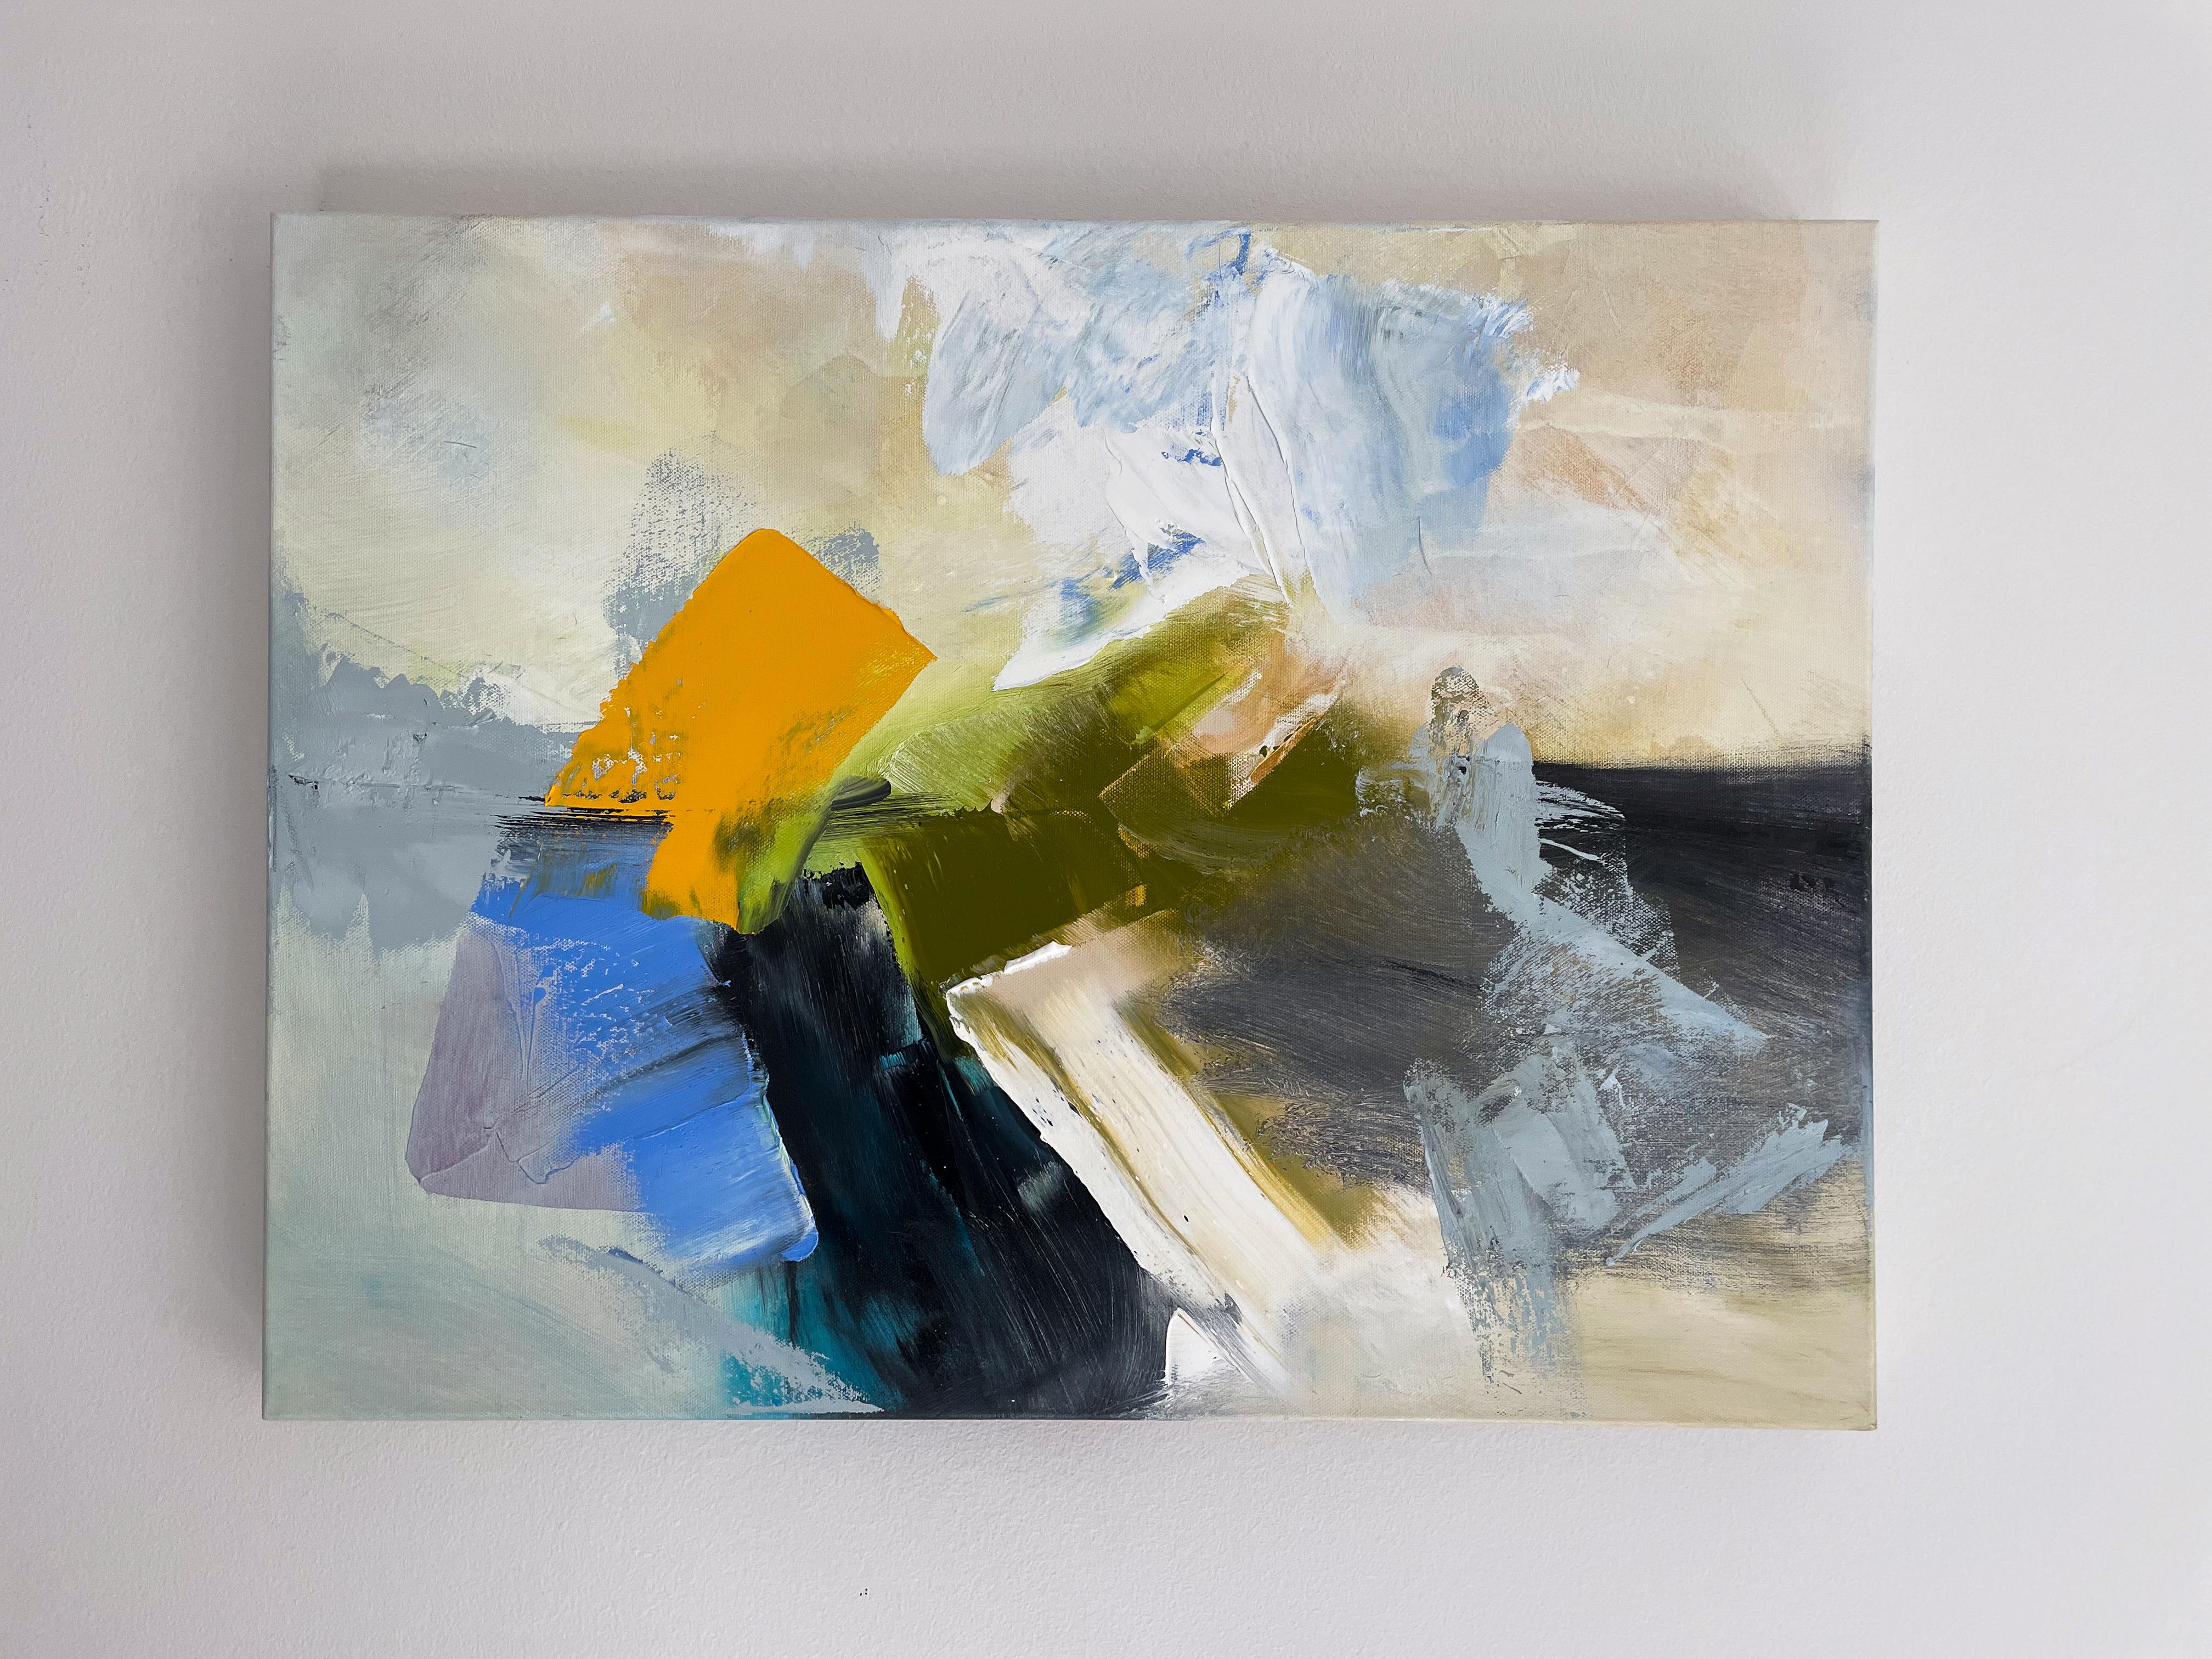 <p>Kommentare der Künstlerin<br>Die Künstlerin Sarah Parsons zeigt ein temperamentvolles abstraktes Bild mit kräftigen grünen, gelben und blauen Akzenten. Sie präsentiert eine Erkundung von Farbe und Bewegung mit kontrastierenden Intensitäten.